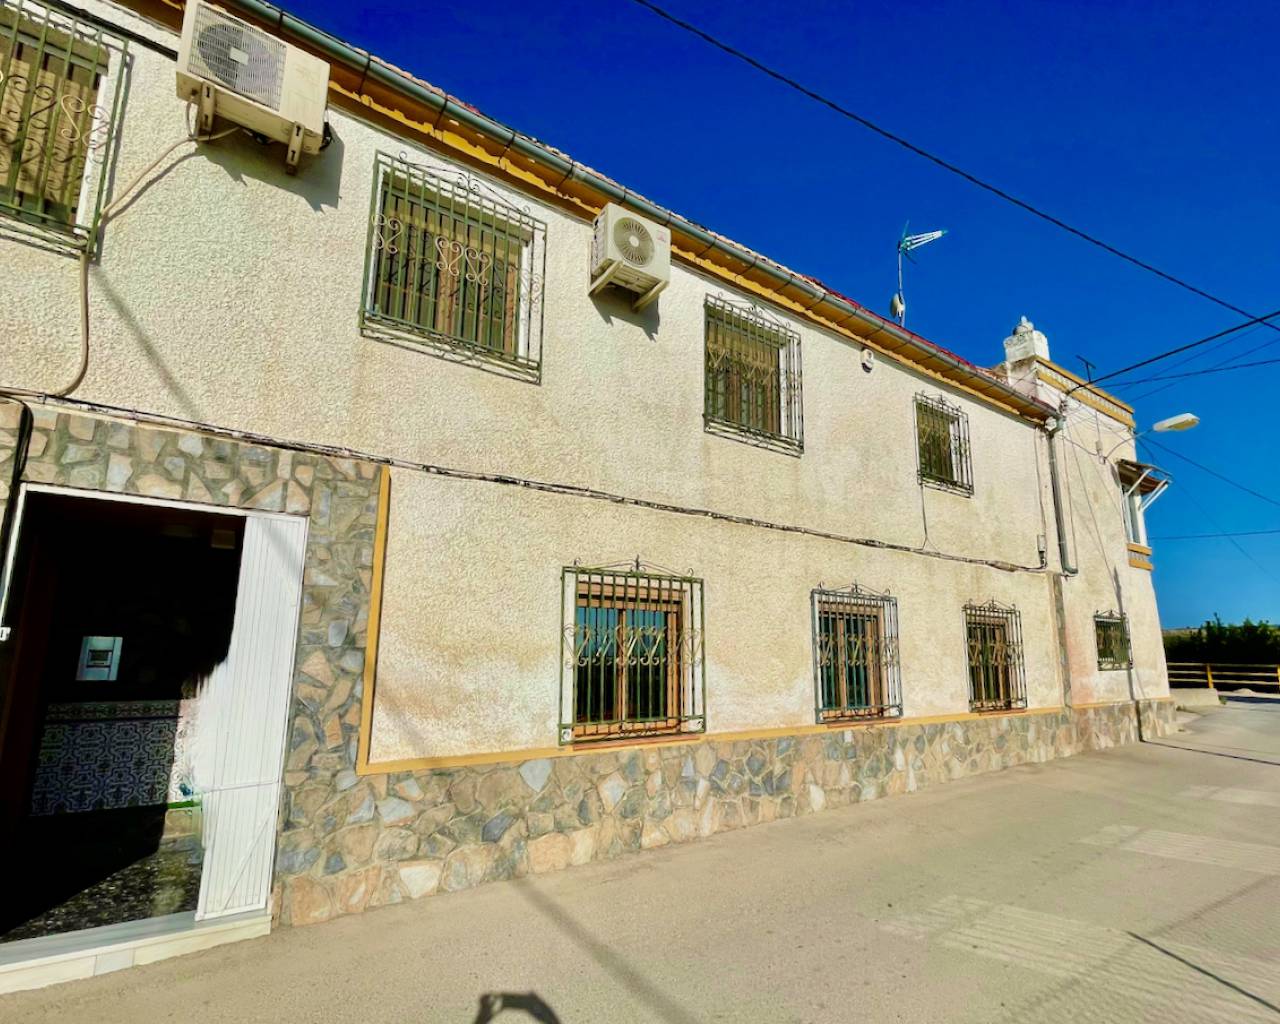 For sale: 3 bedroom house / villa in Orihuela, Costa Blanca